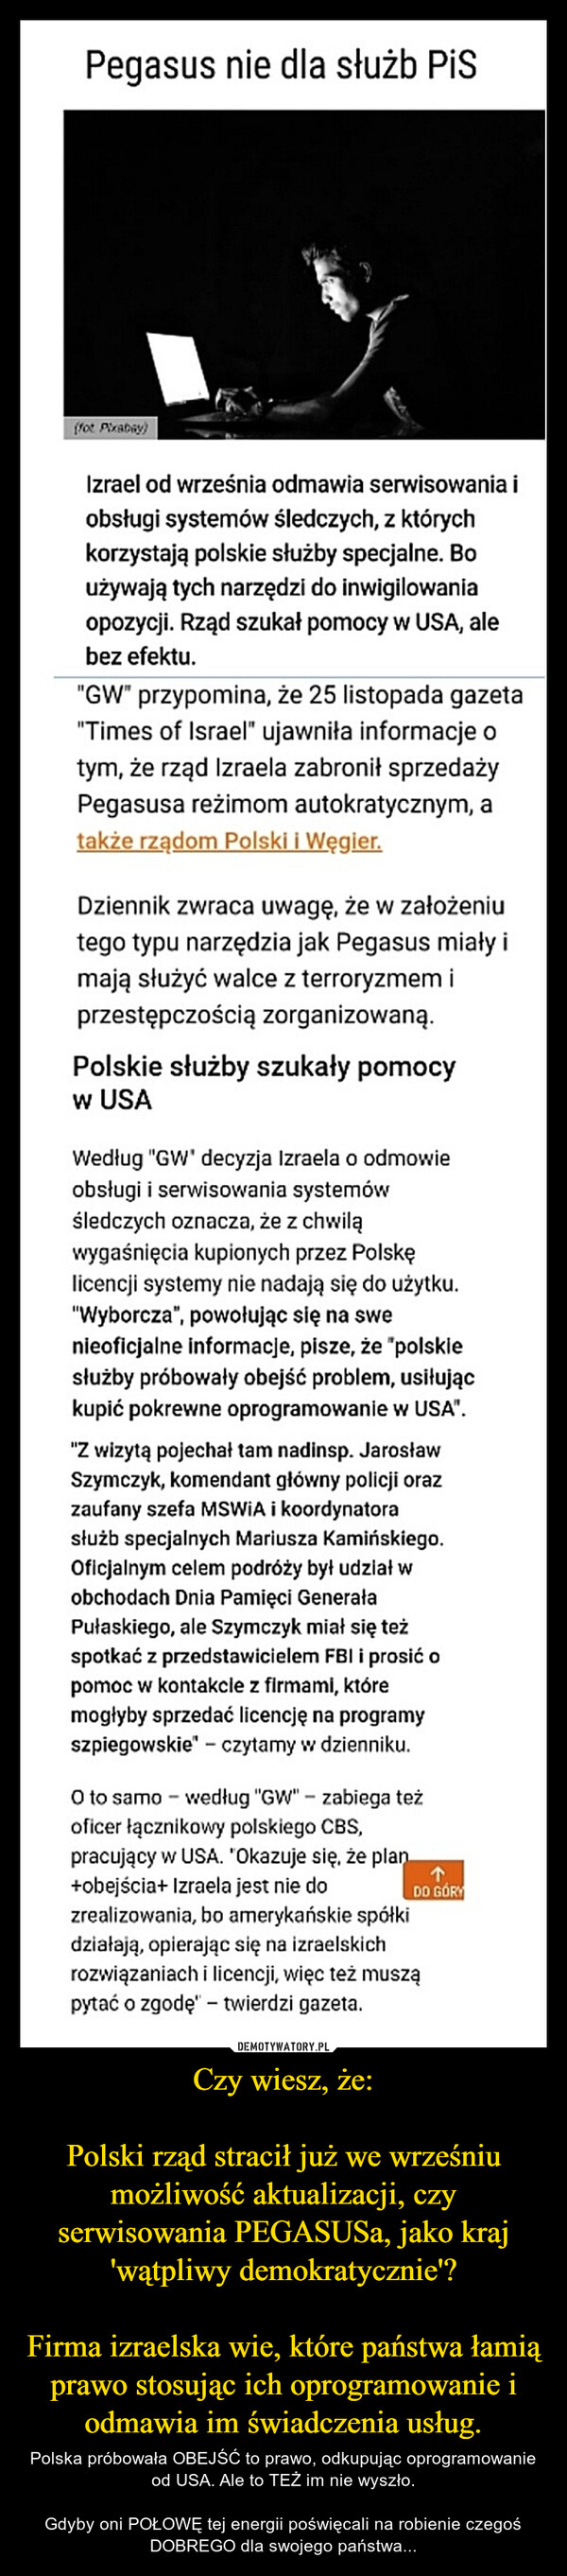 Czy wiesz, że:Polski rząd stracił już we wrześniu możliwość aktualizacji, czy serwisowania PEGASUSa, jako kraj 'wątpliwy demokratycznie'?Firma izraelska wie, które państwa łamią prawo stosując ich oprogramowanie i odmawia im świadczenia usług. – Polska próbowała OBEJŚĆ to prawo, odkupując oprogramowanie od USA. Ale to TEŻ im nie wyszło.Gdyby oni POŁOWĘ tej energii poświęcali na robienie czegoś DOBREGO dla swojego państwa... 